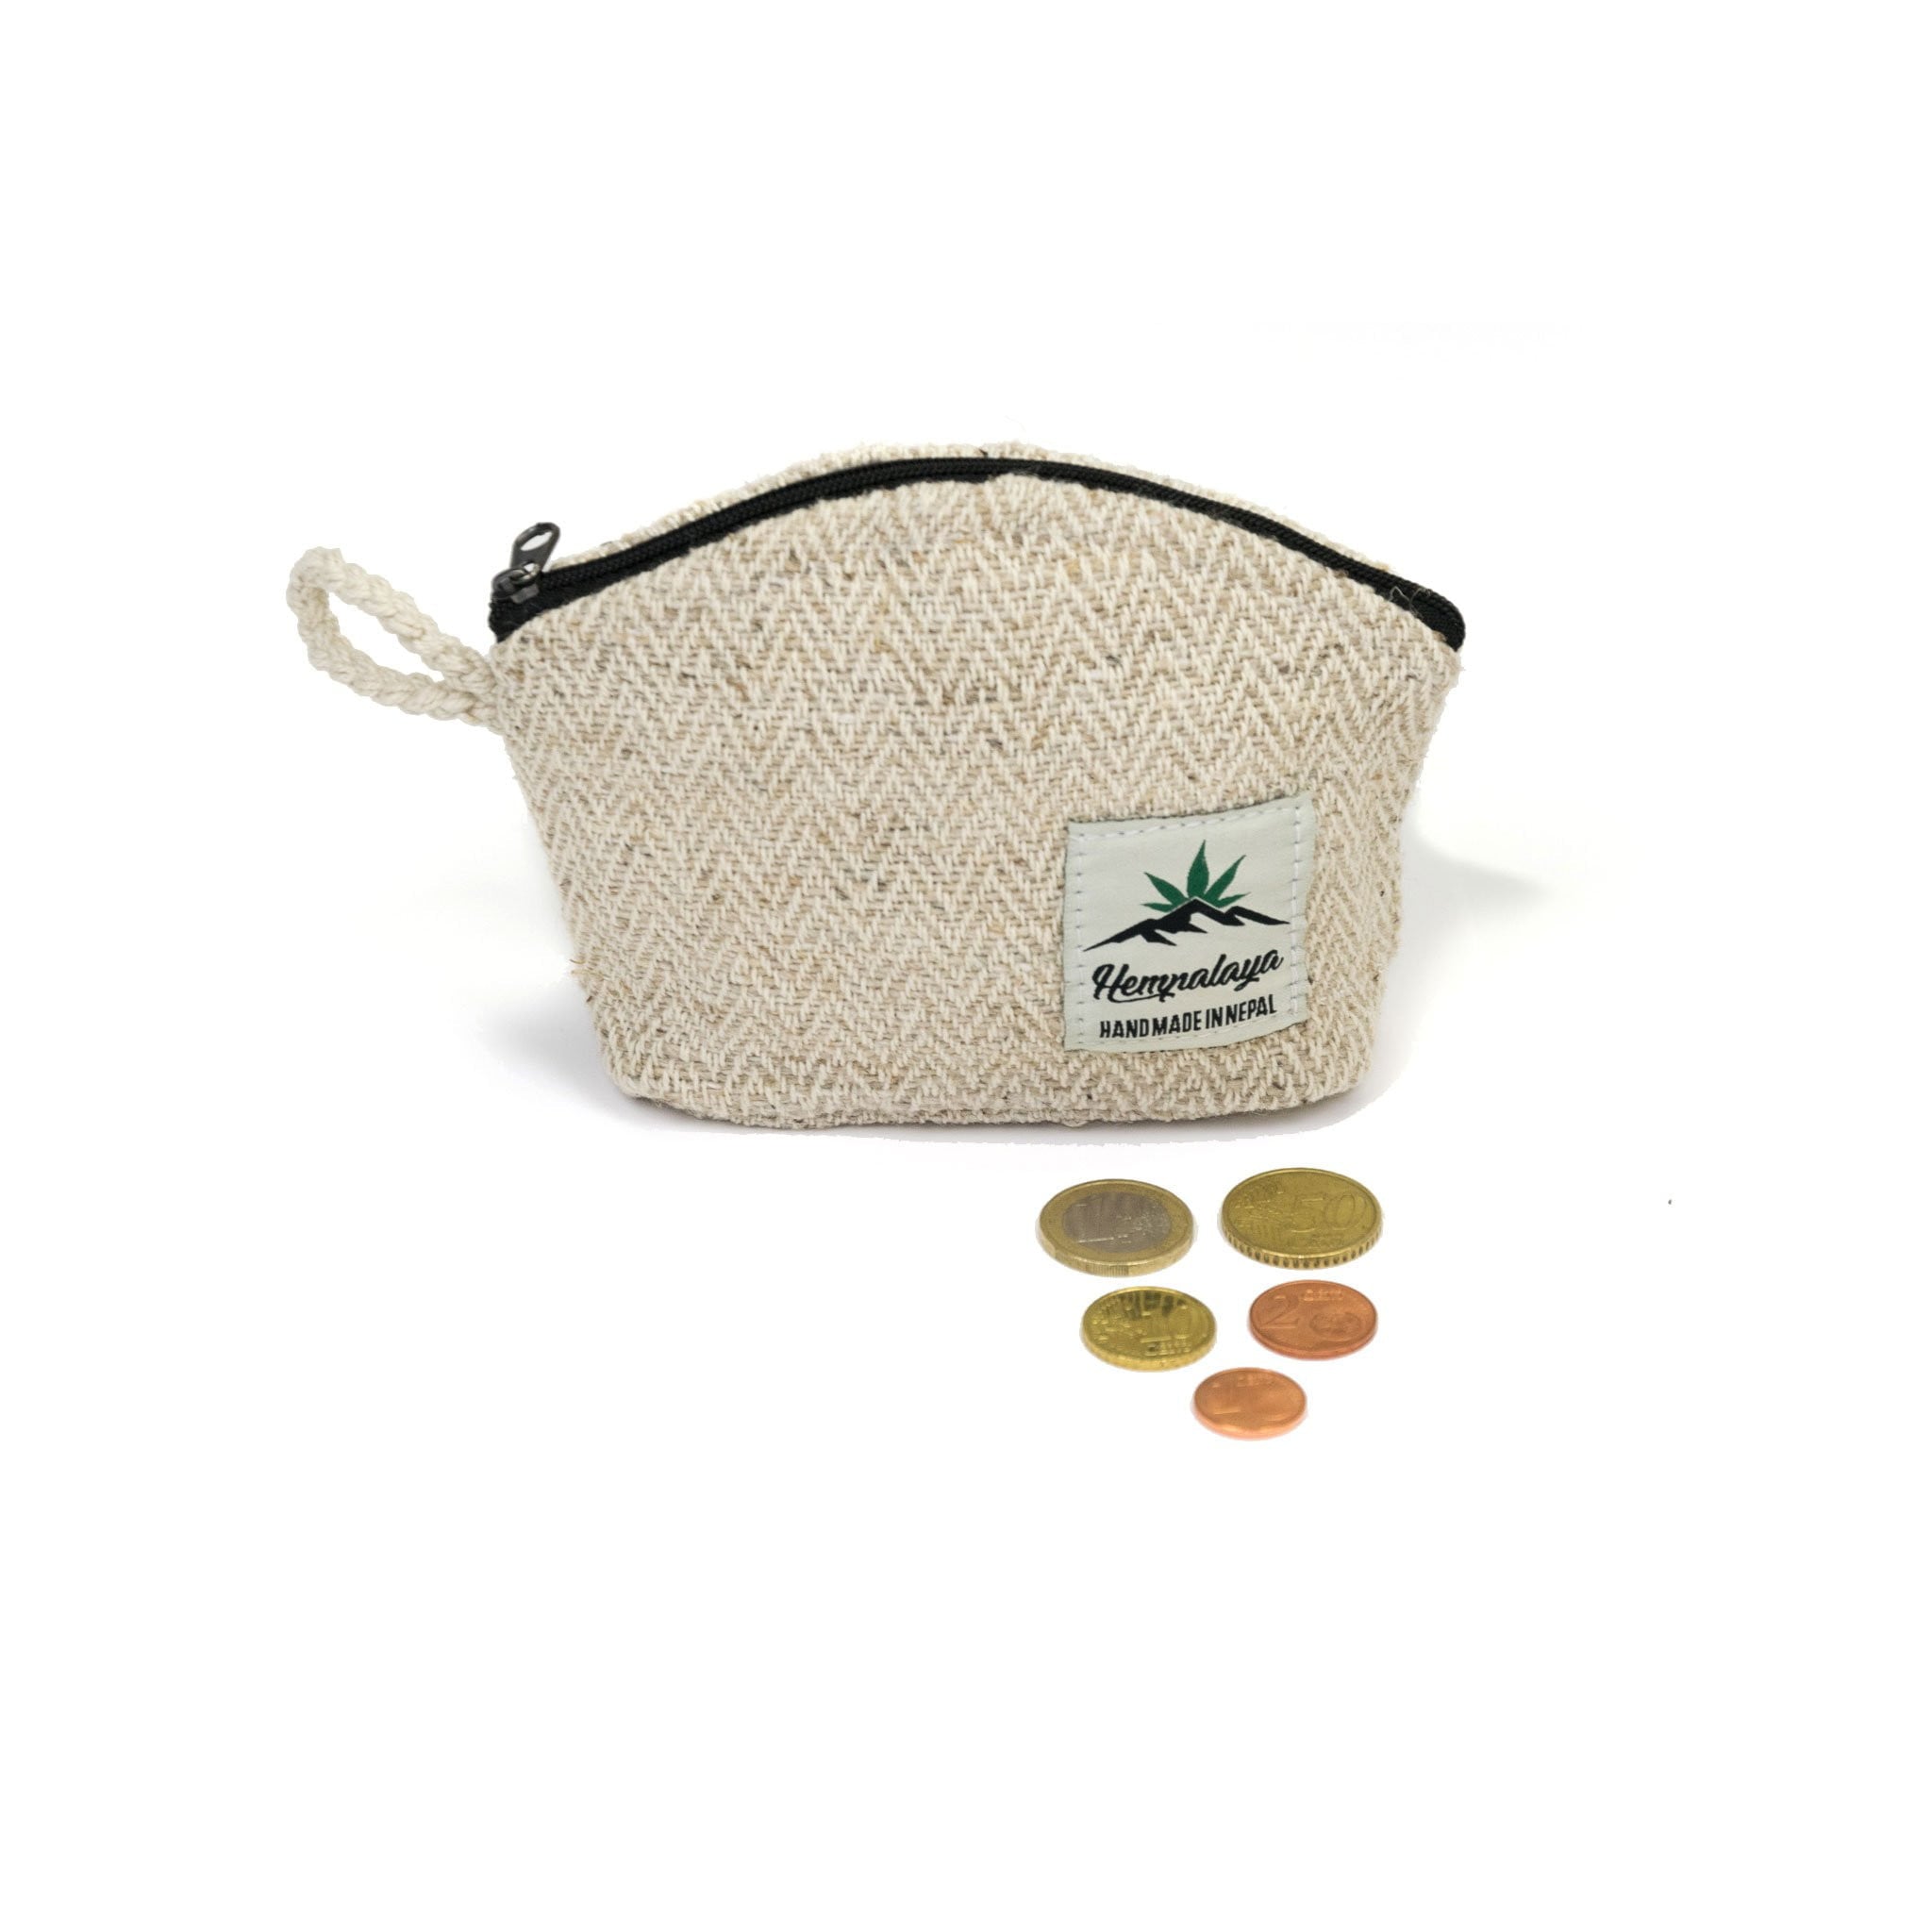 Hemp coin purse, change purse, natural - Hempalaya